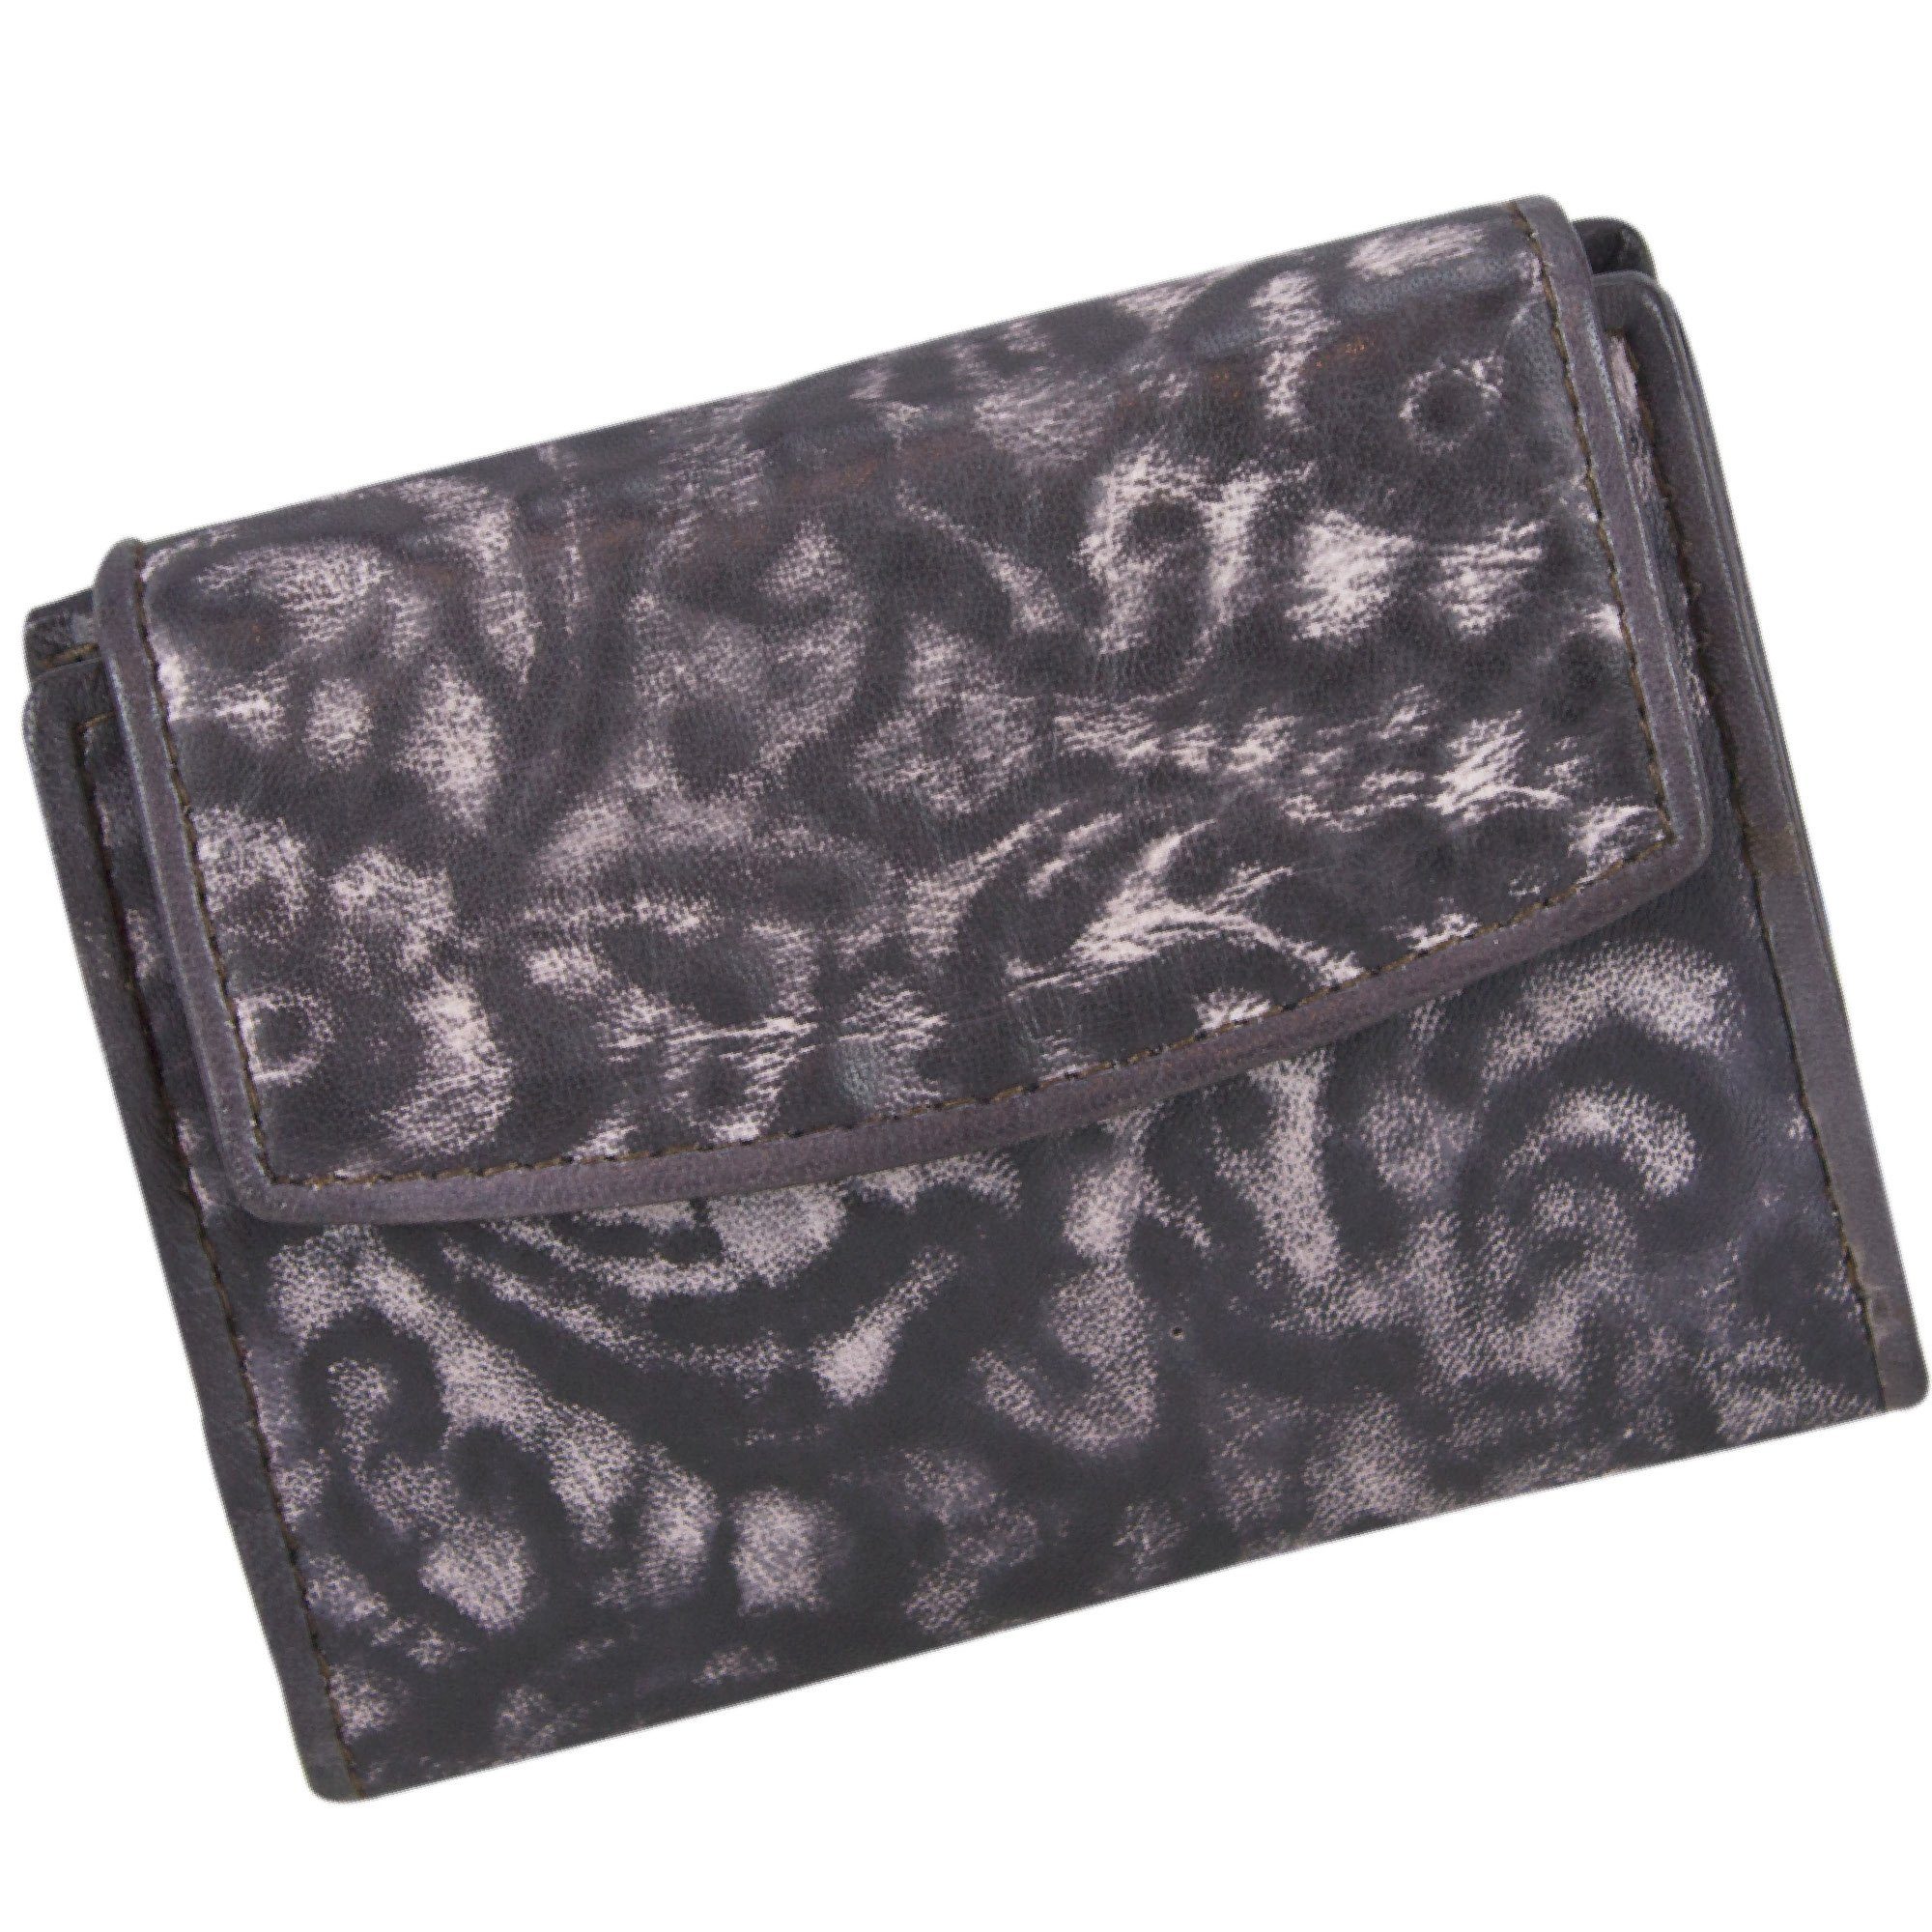 Sunsa Geldbörse Kleine Leder Geldbeutel Vintage Portemonnaie Brieftasche Damen, echt Leder, Vintage Style, mit RFID-Schutz, zeitlos D.braun